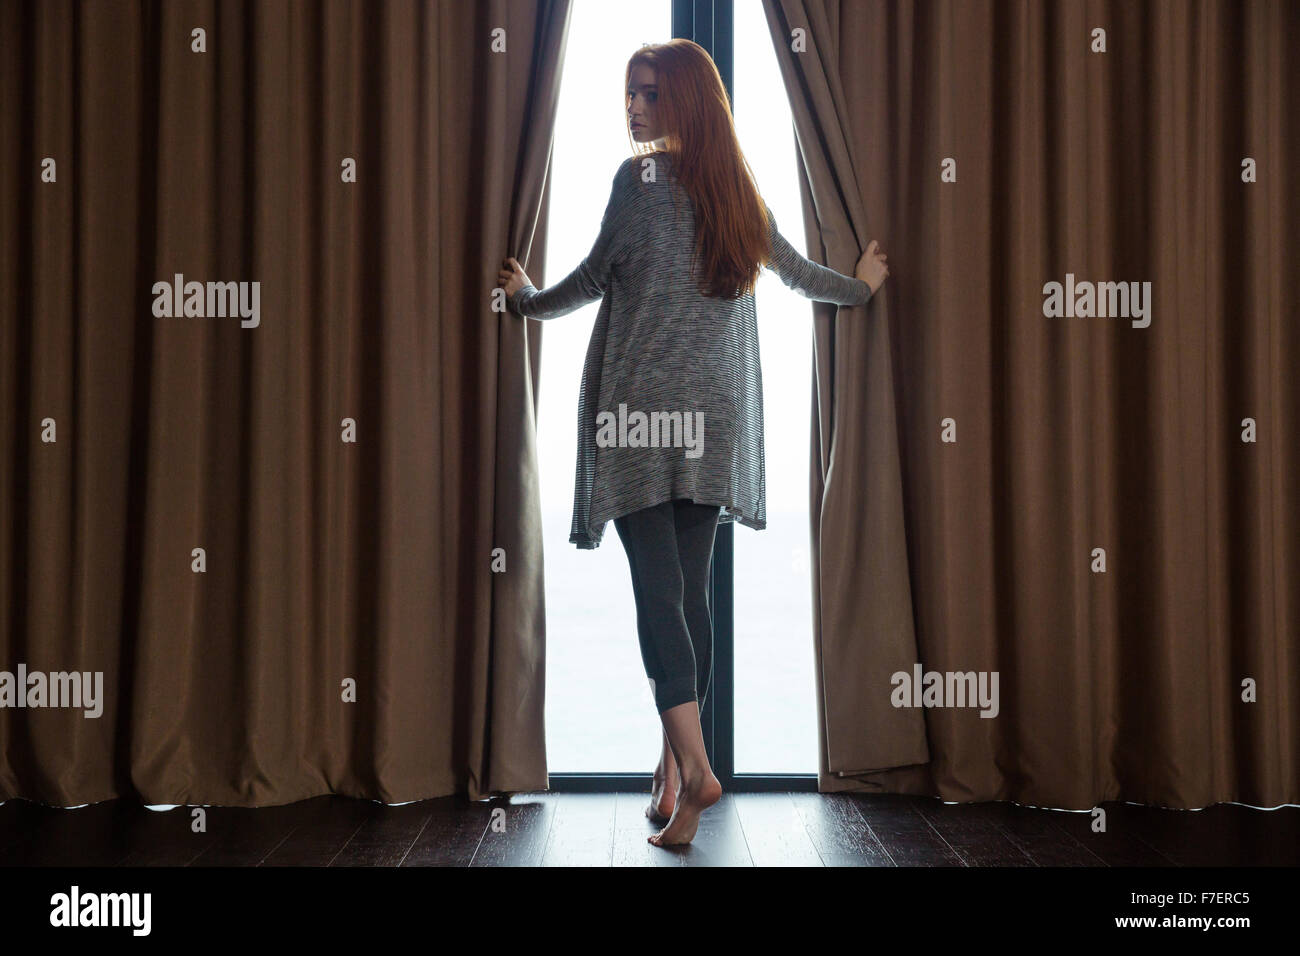 Entspannte schöne rothaarige junge Frau öffnen der Vorhänge, barfuß vor dem Fenster stehen und blickte zurück Stockfoto